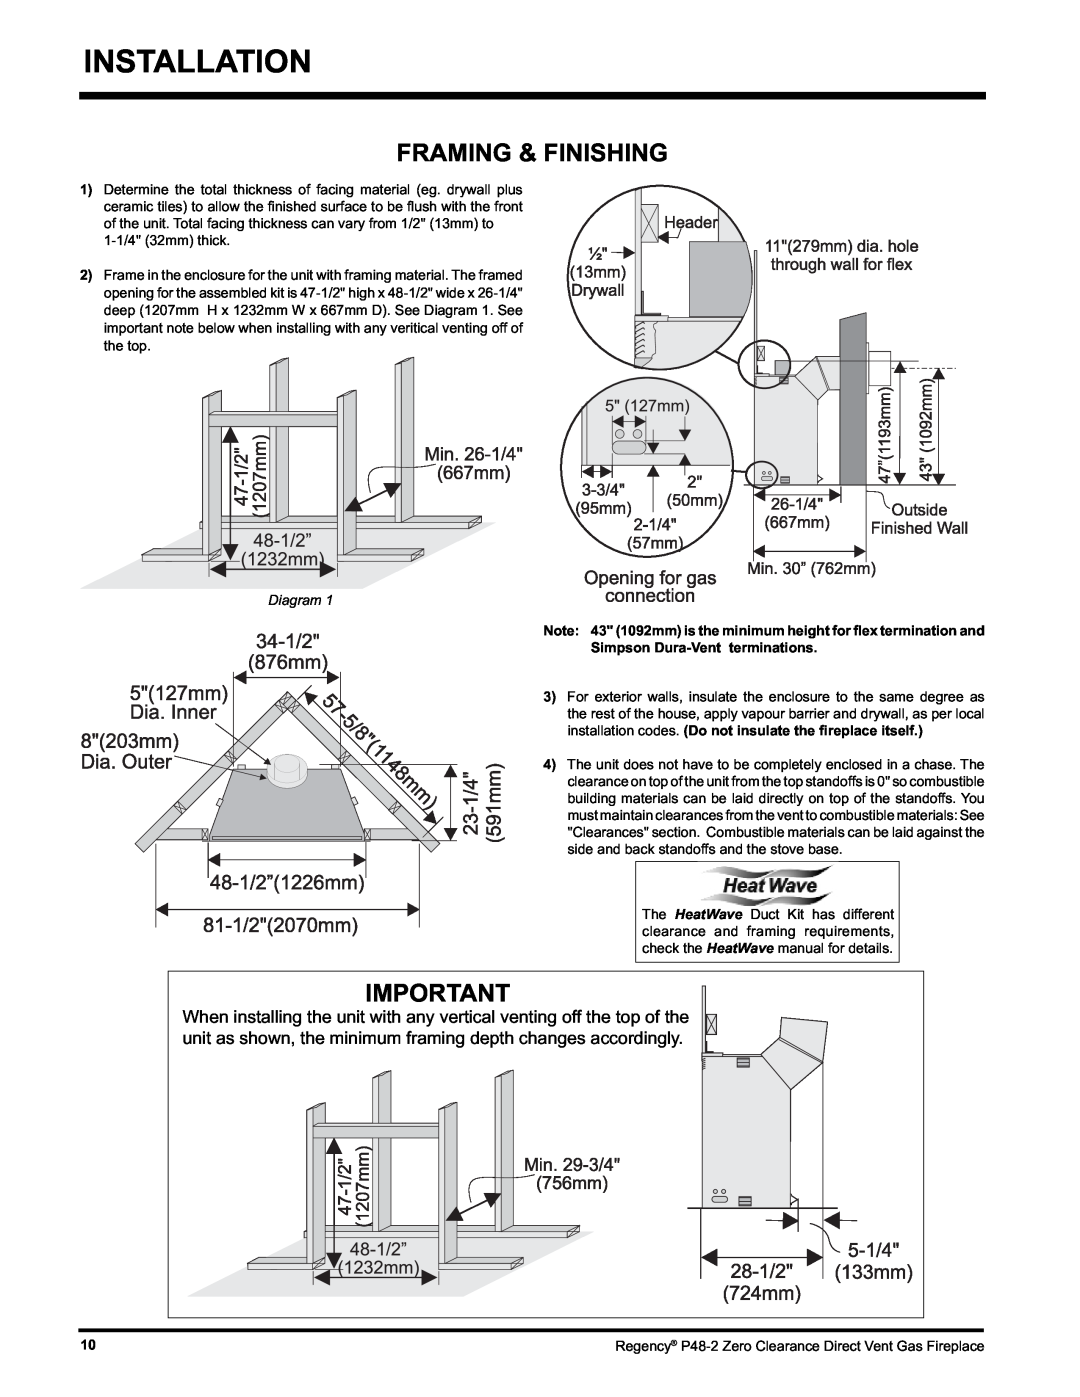 Regency P48-2 installation manual Installation, Framing & Finishing, Diagram, Simpson Dura-Ventterminations 